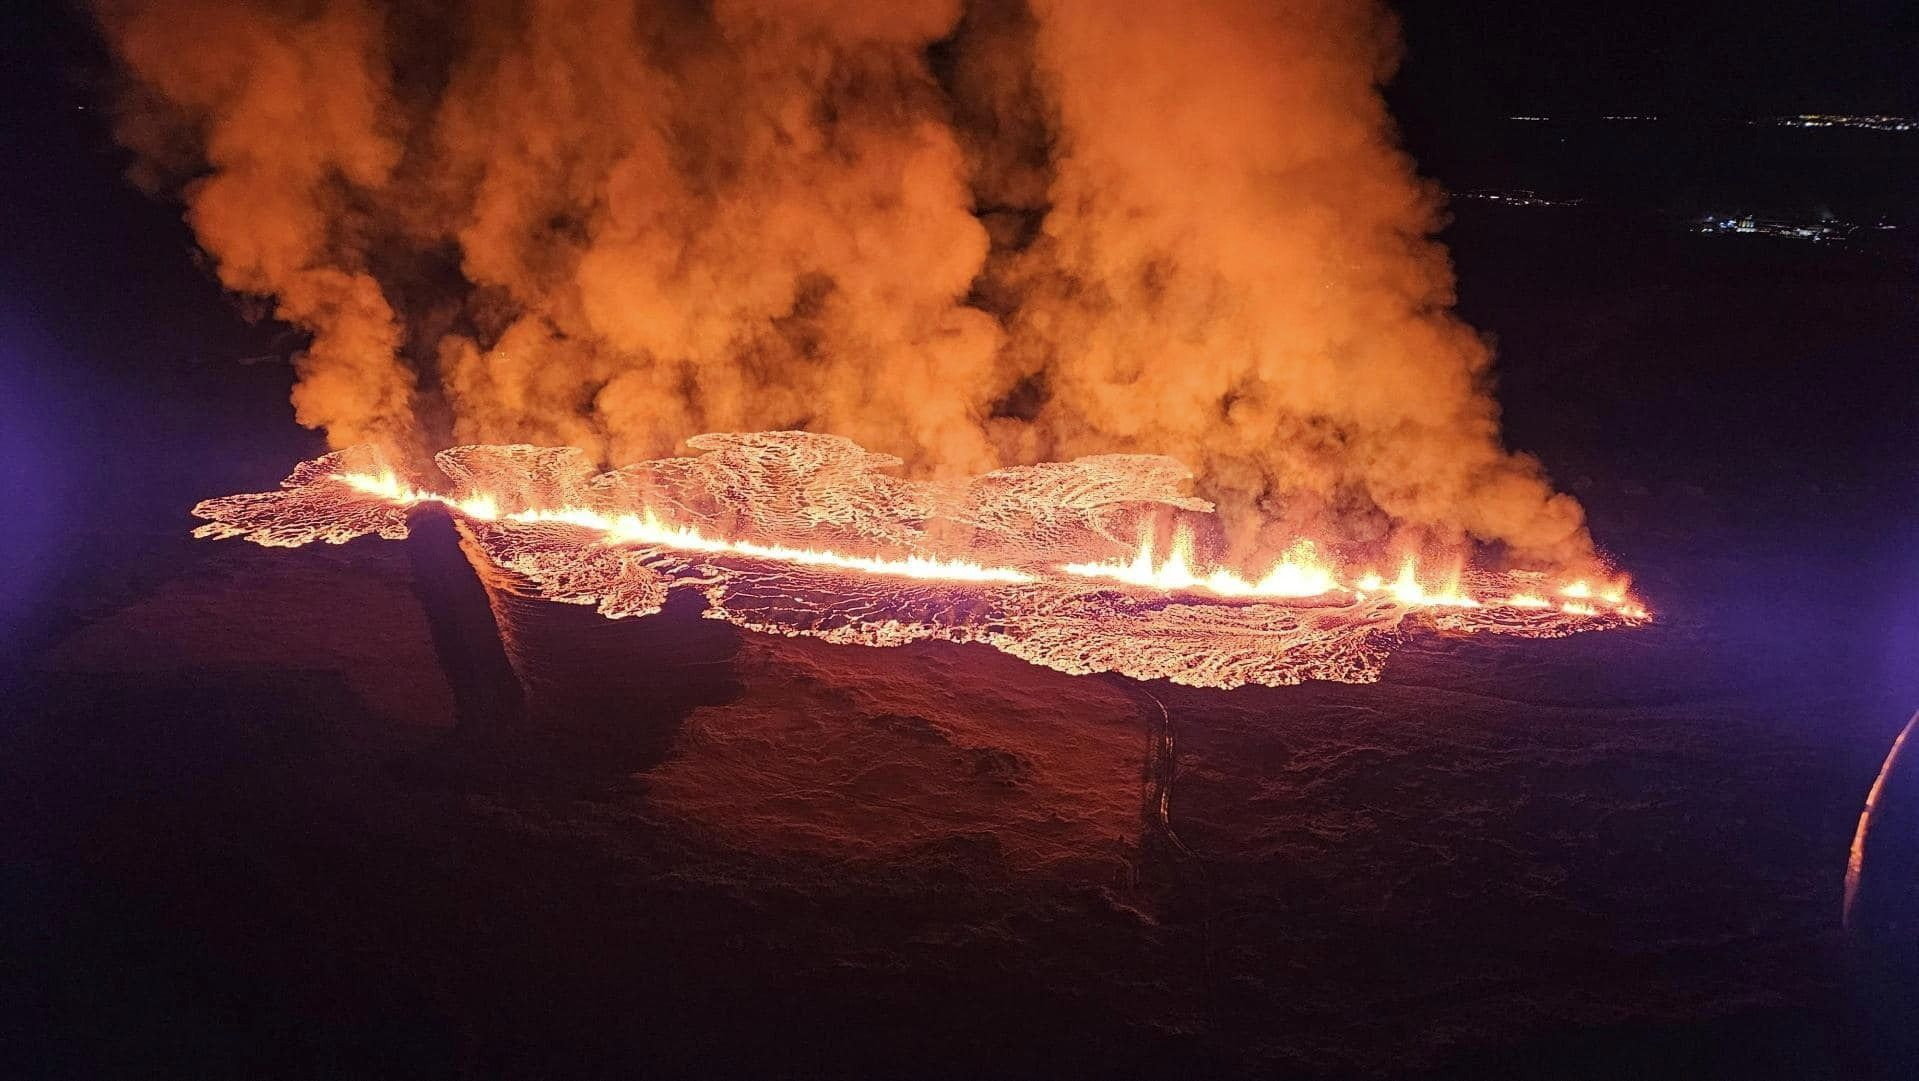 Újabb vulkánkitörés Izlandon - videón az elképesztő látvány